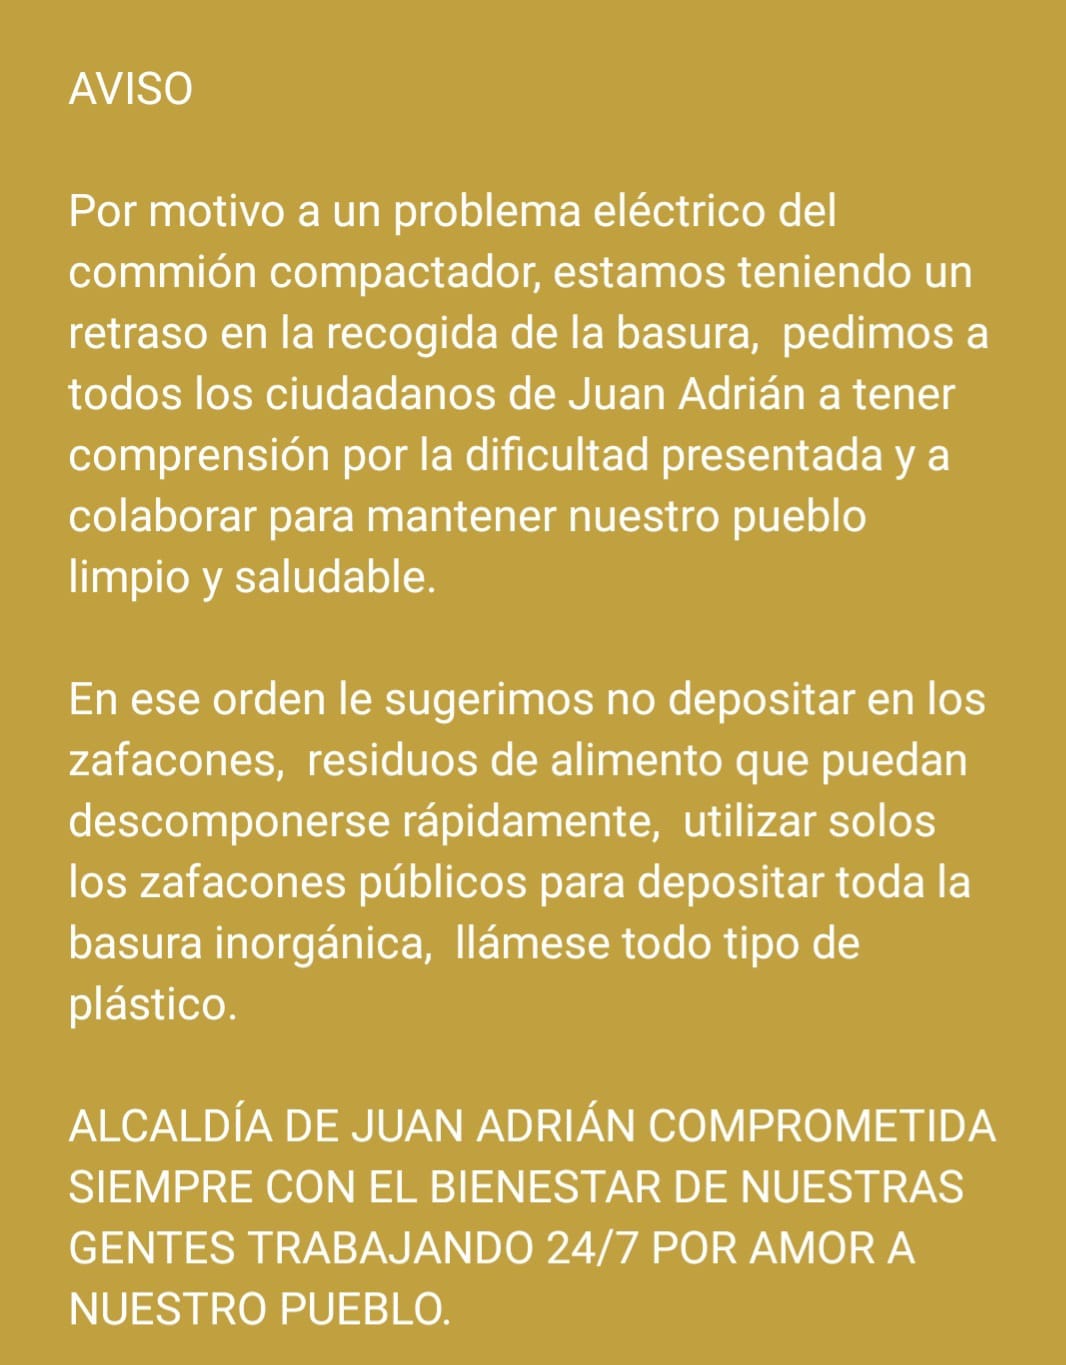 Atencion Ciudadanos de Juan Adrian